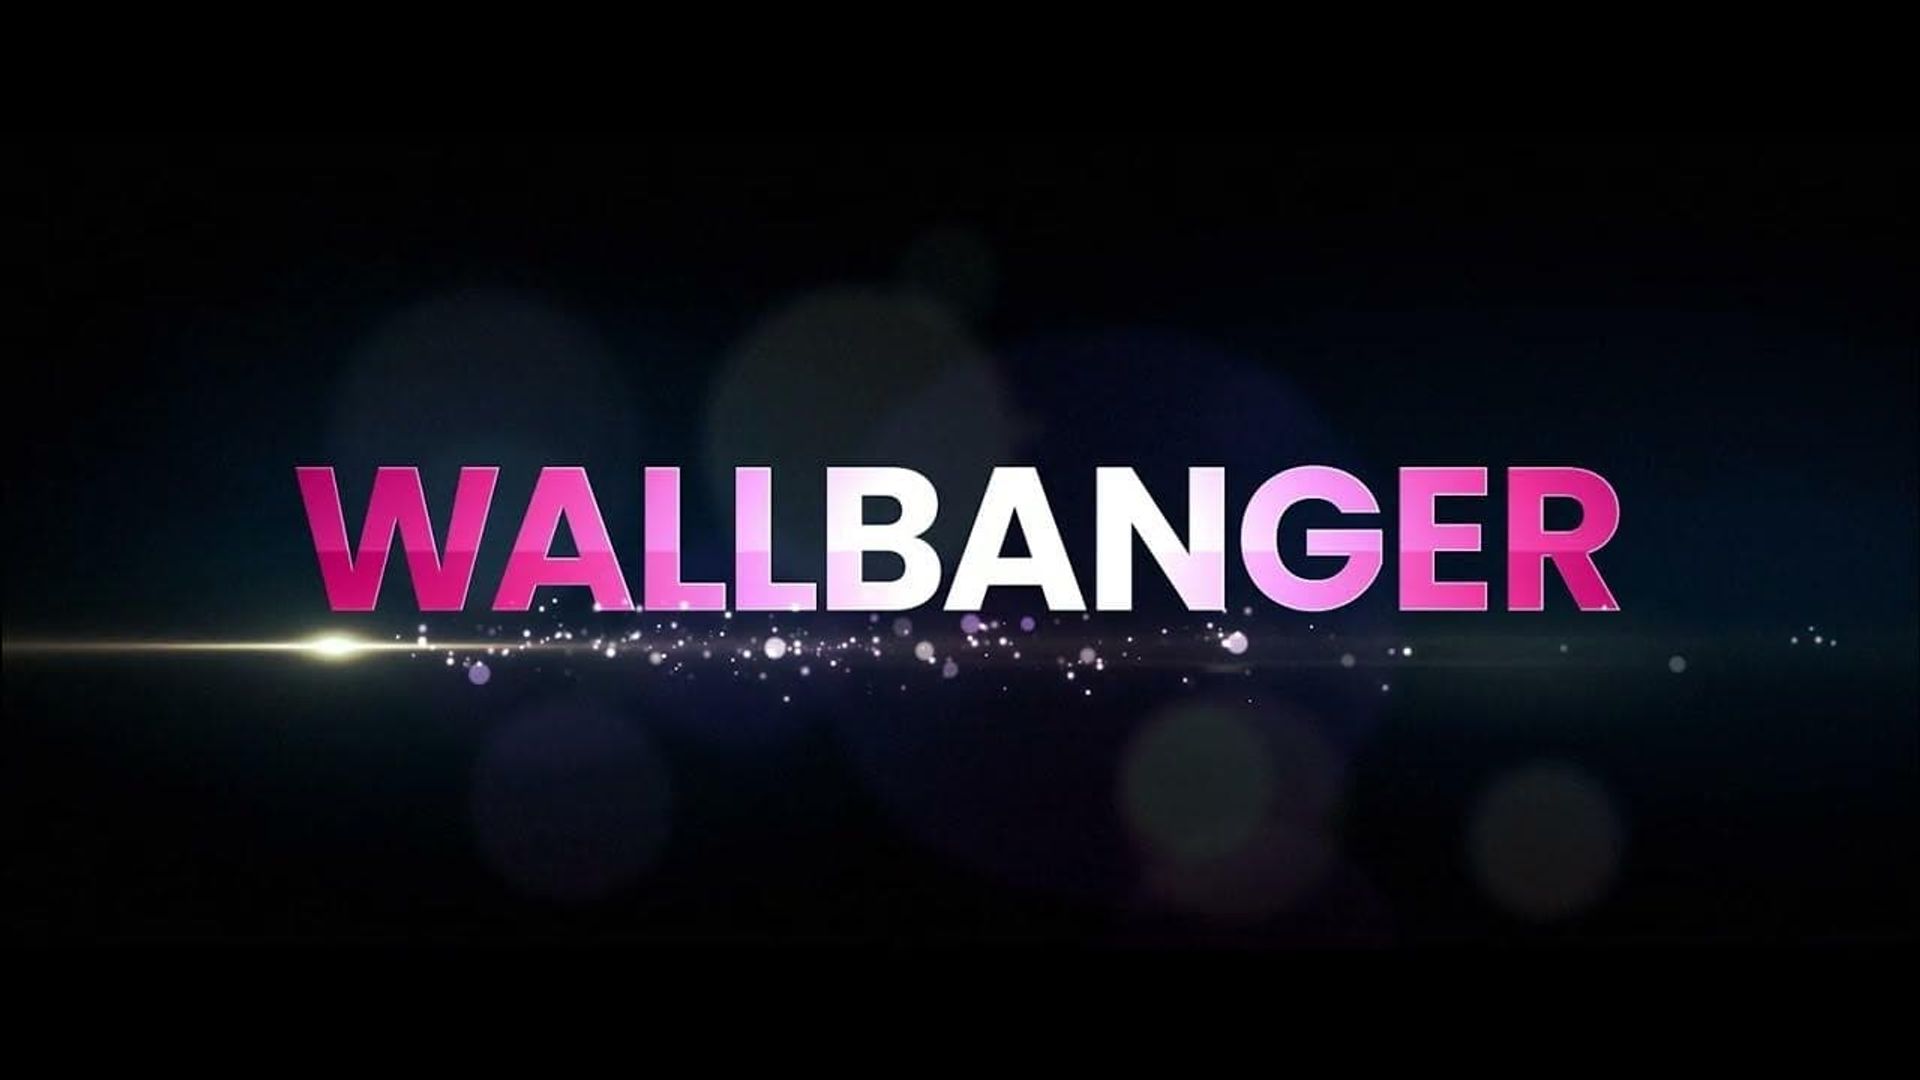 Wallbanger background